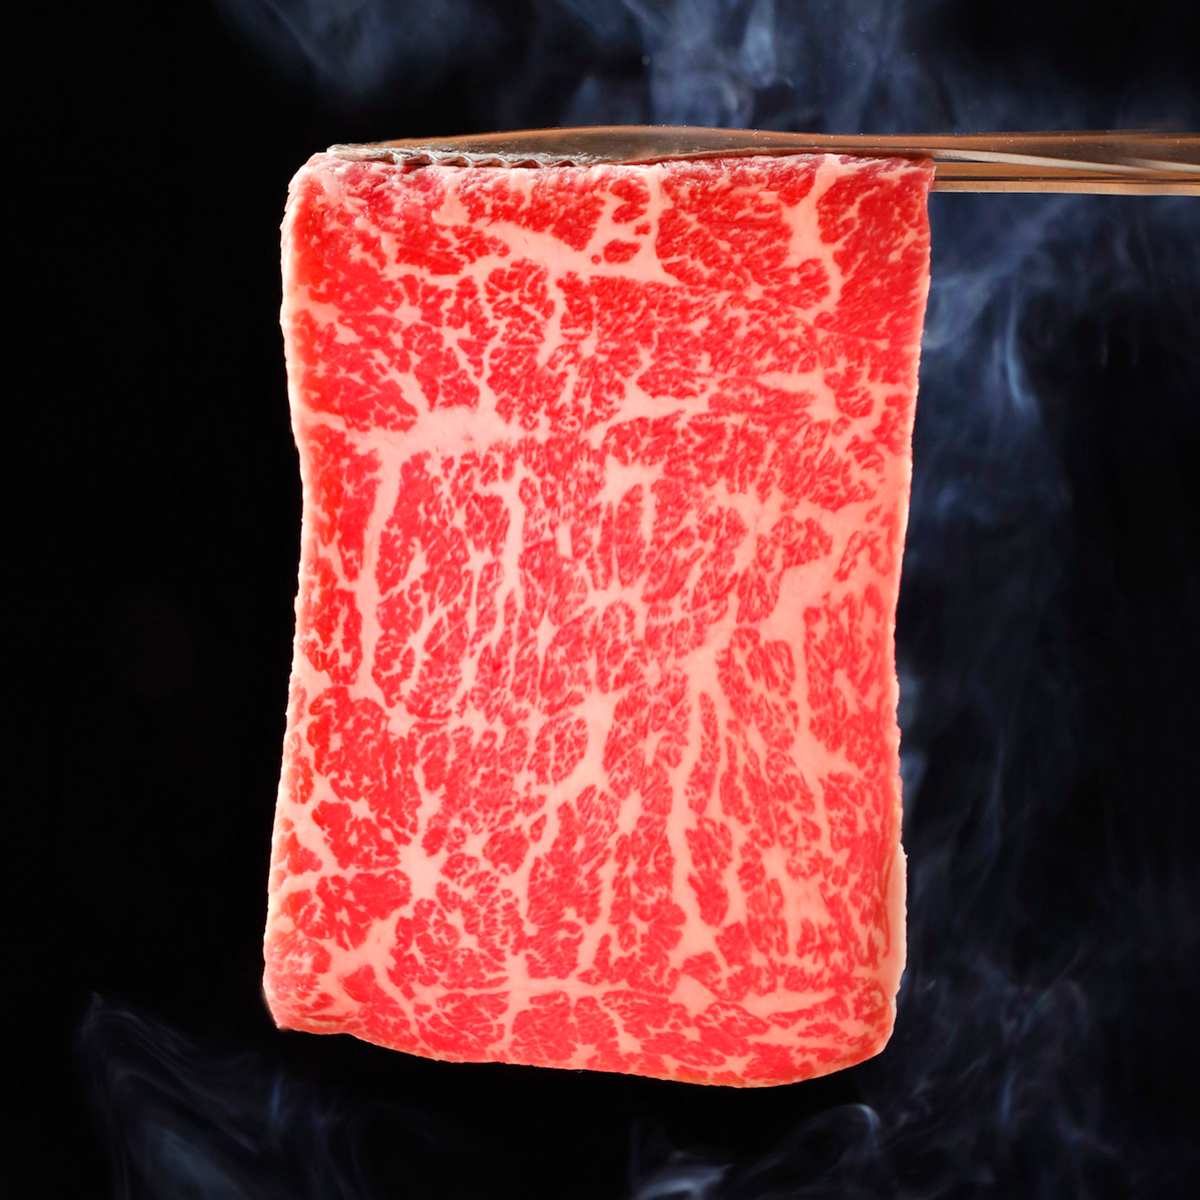 燒肉套餐限時買2送2！4種肉品定食198元起，日本A5和牛挑戰全世界最便宜